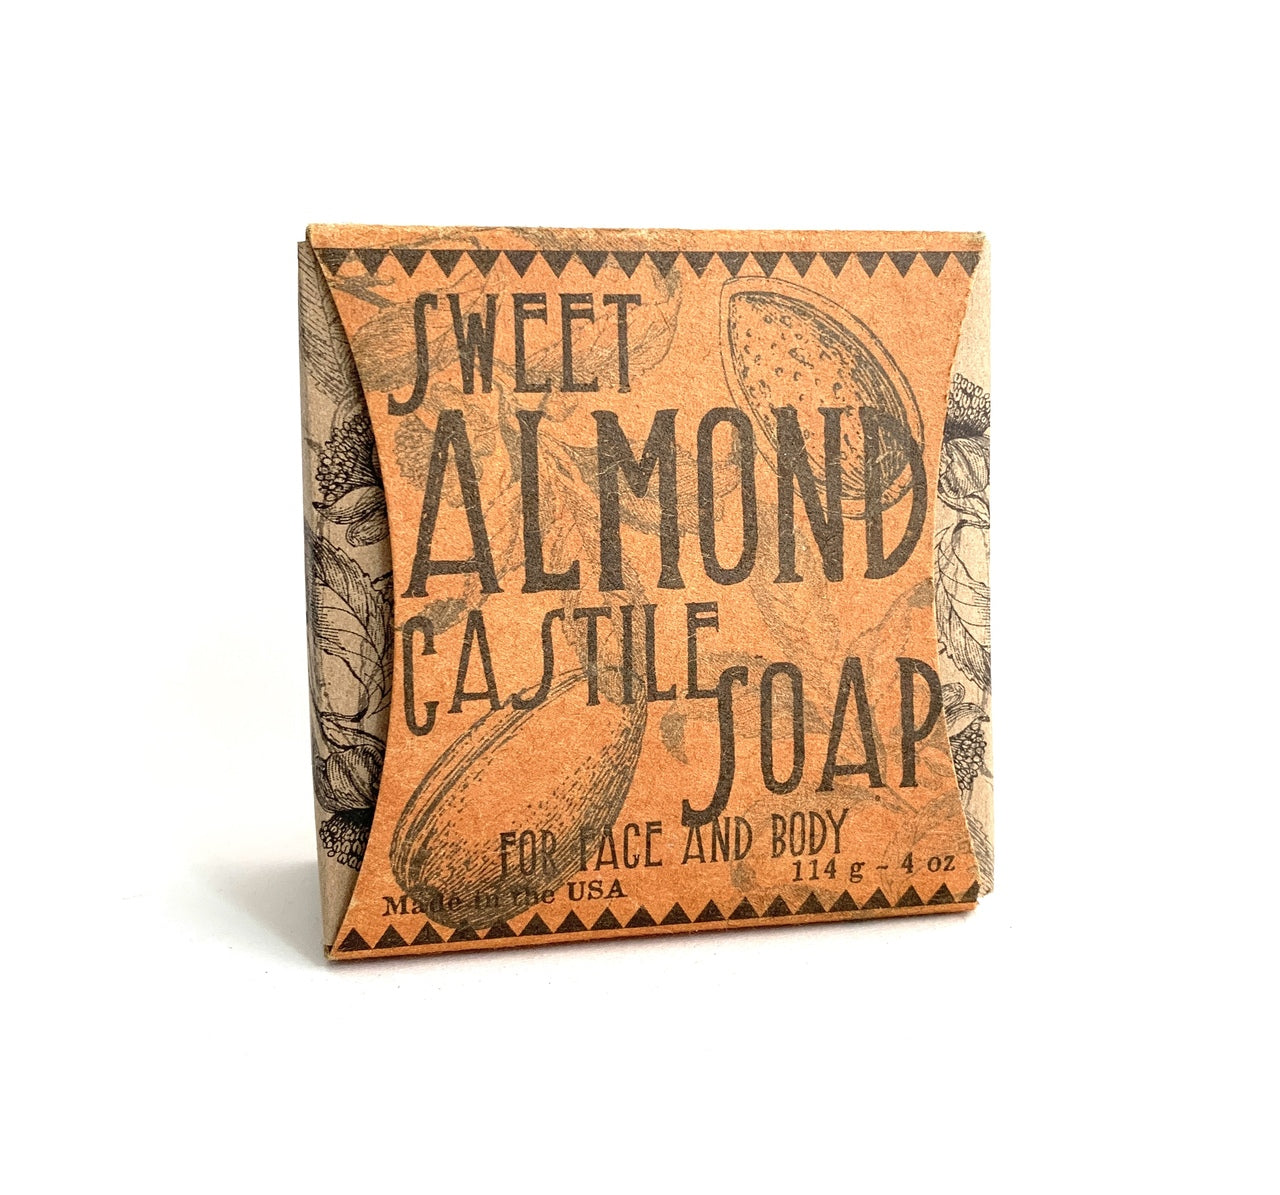 Sweet Almond Castile Soap